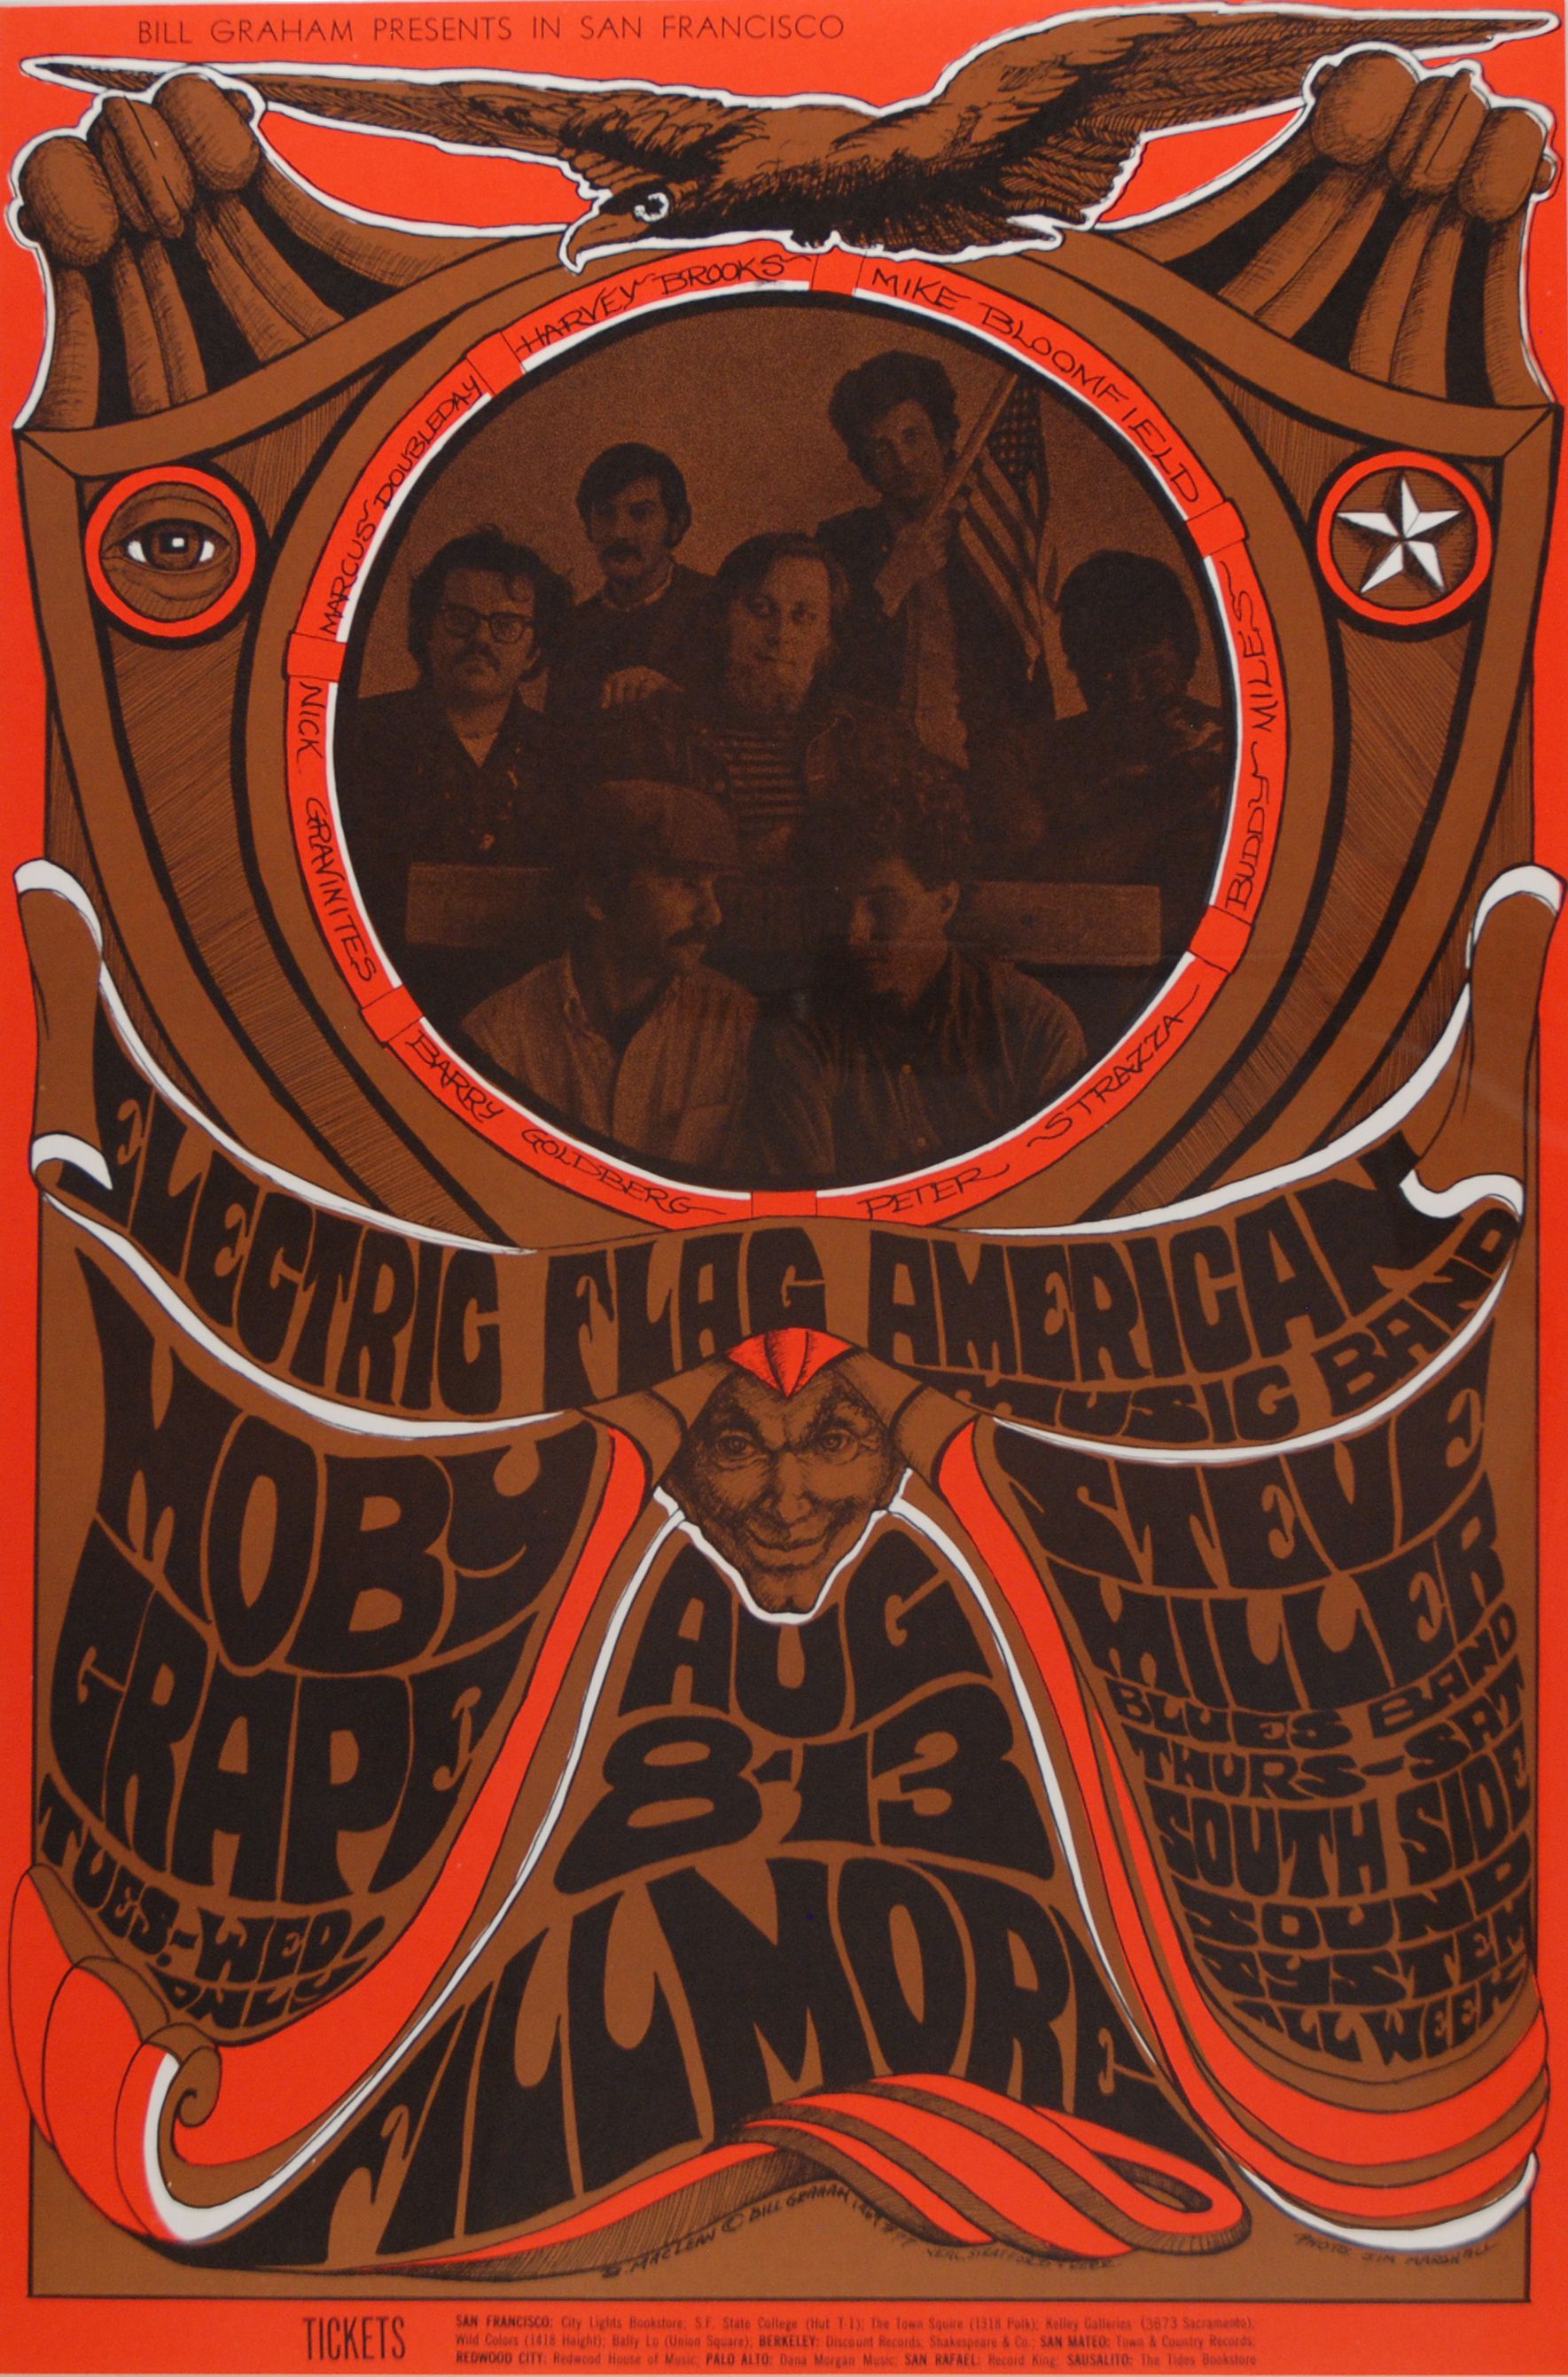 BG-77-OP-1 Concert Poster